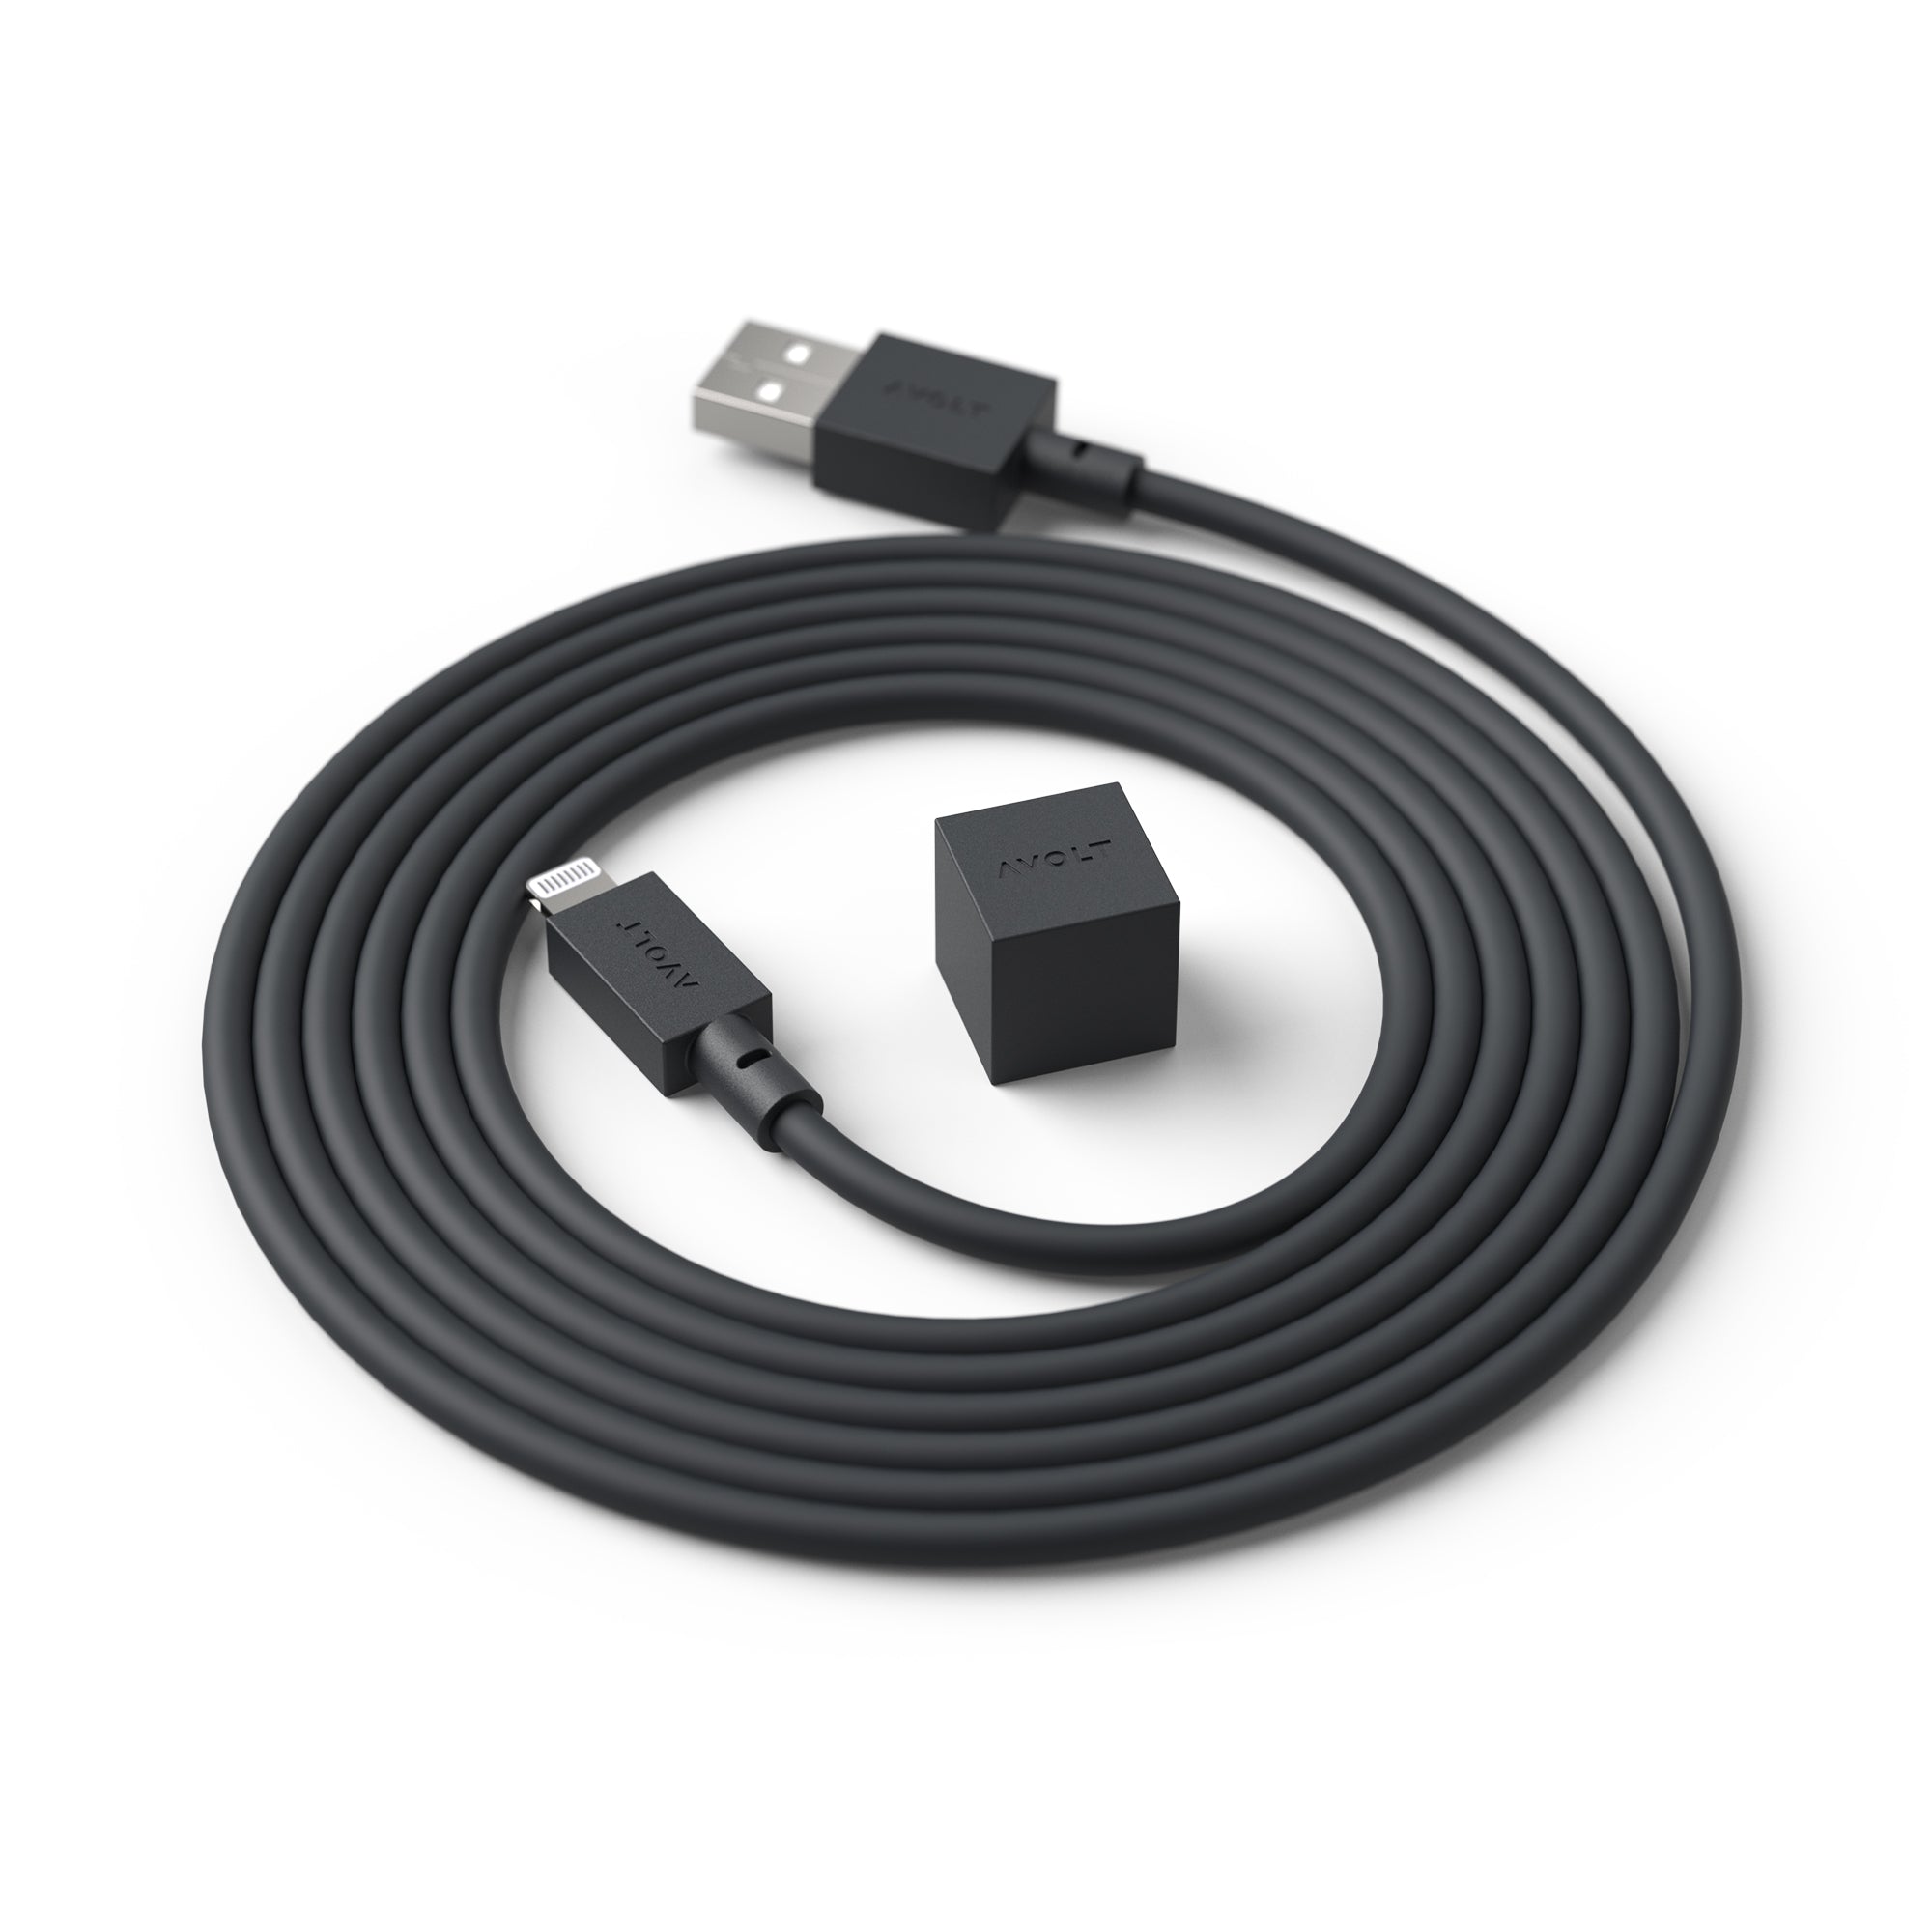 Avolt Cable 1 USB latauskaapeli musta - Laatukaluste